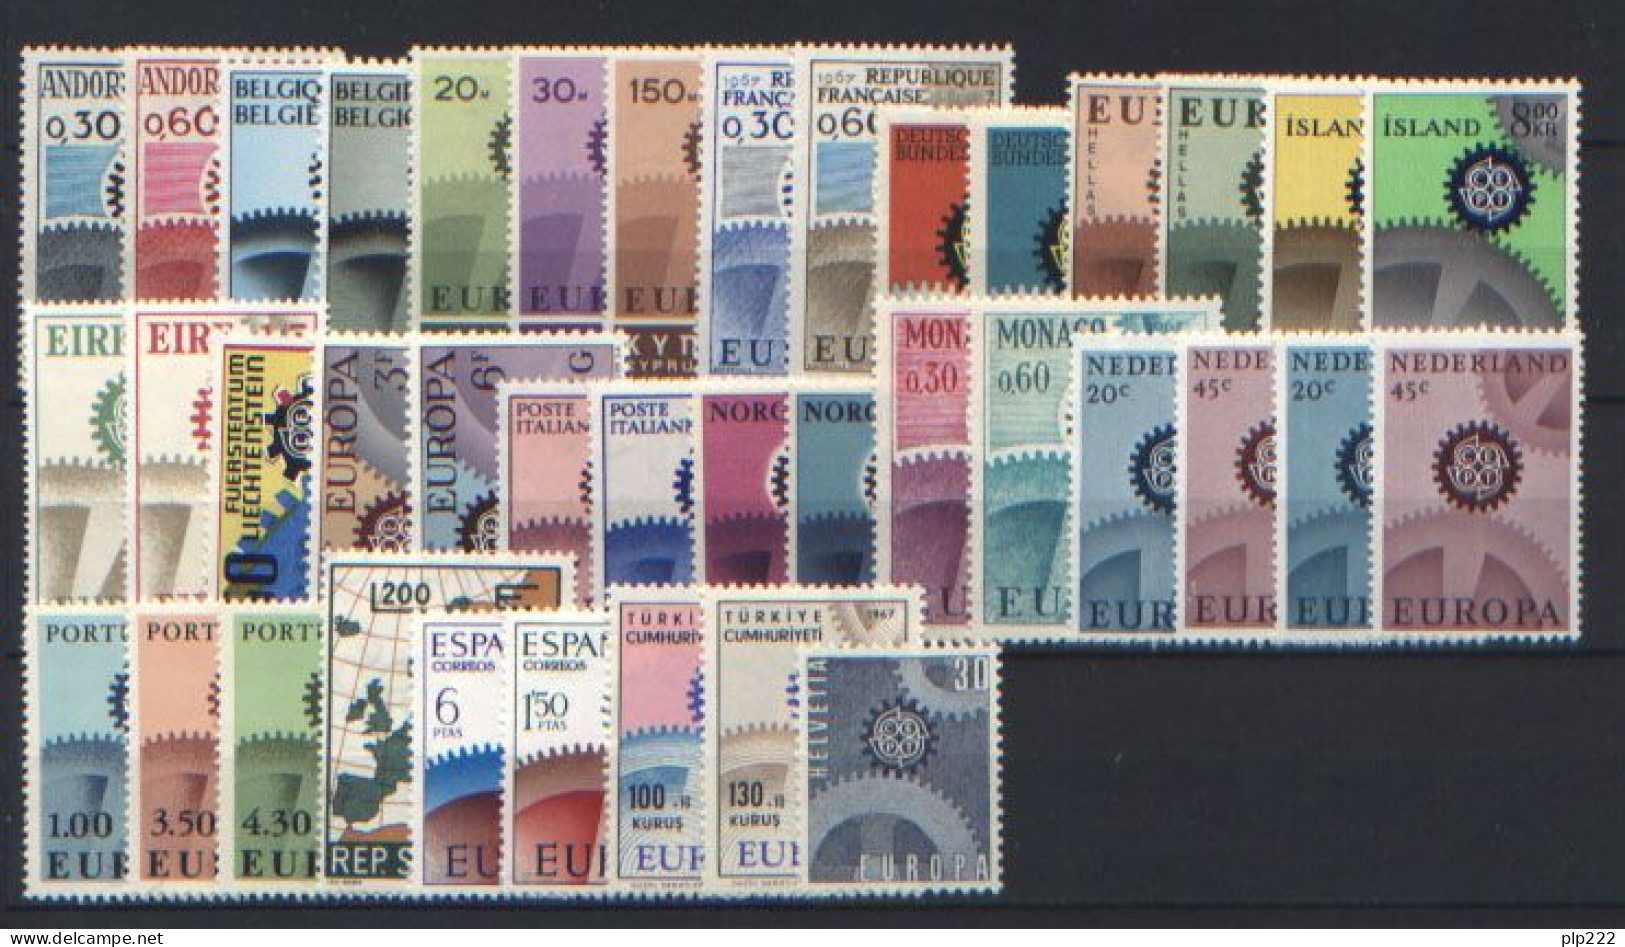 Europa CEPT 1967 Annata Completa + Foglietto / Complete Year Set + S/S **/MNH VF - Komplette Jahrgänge